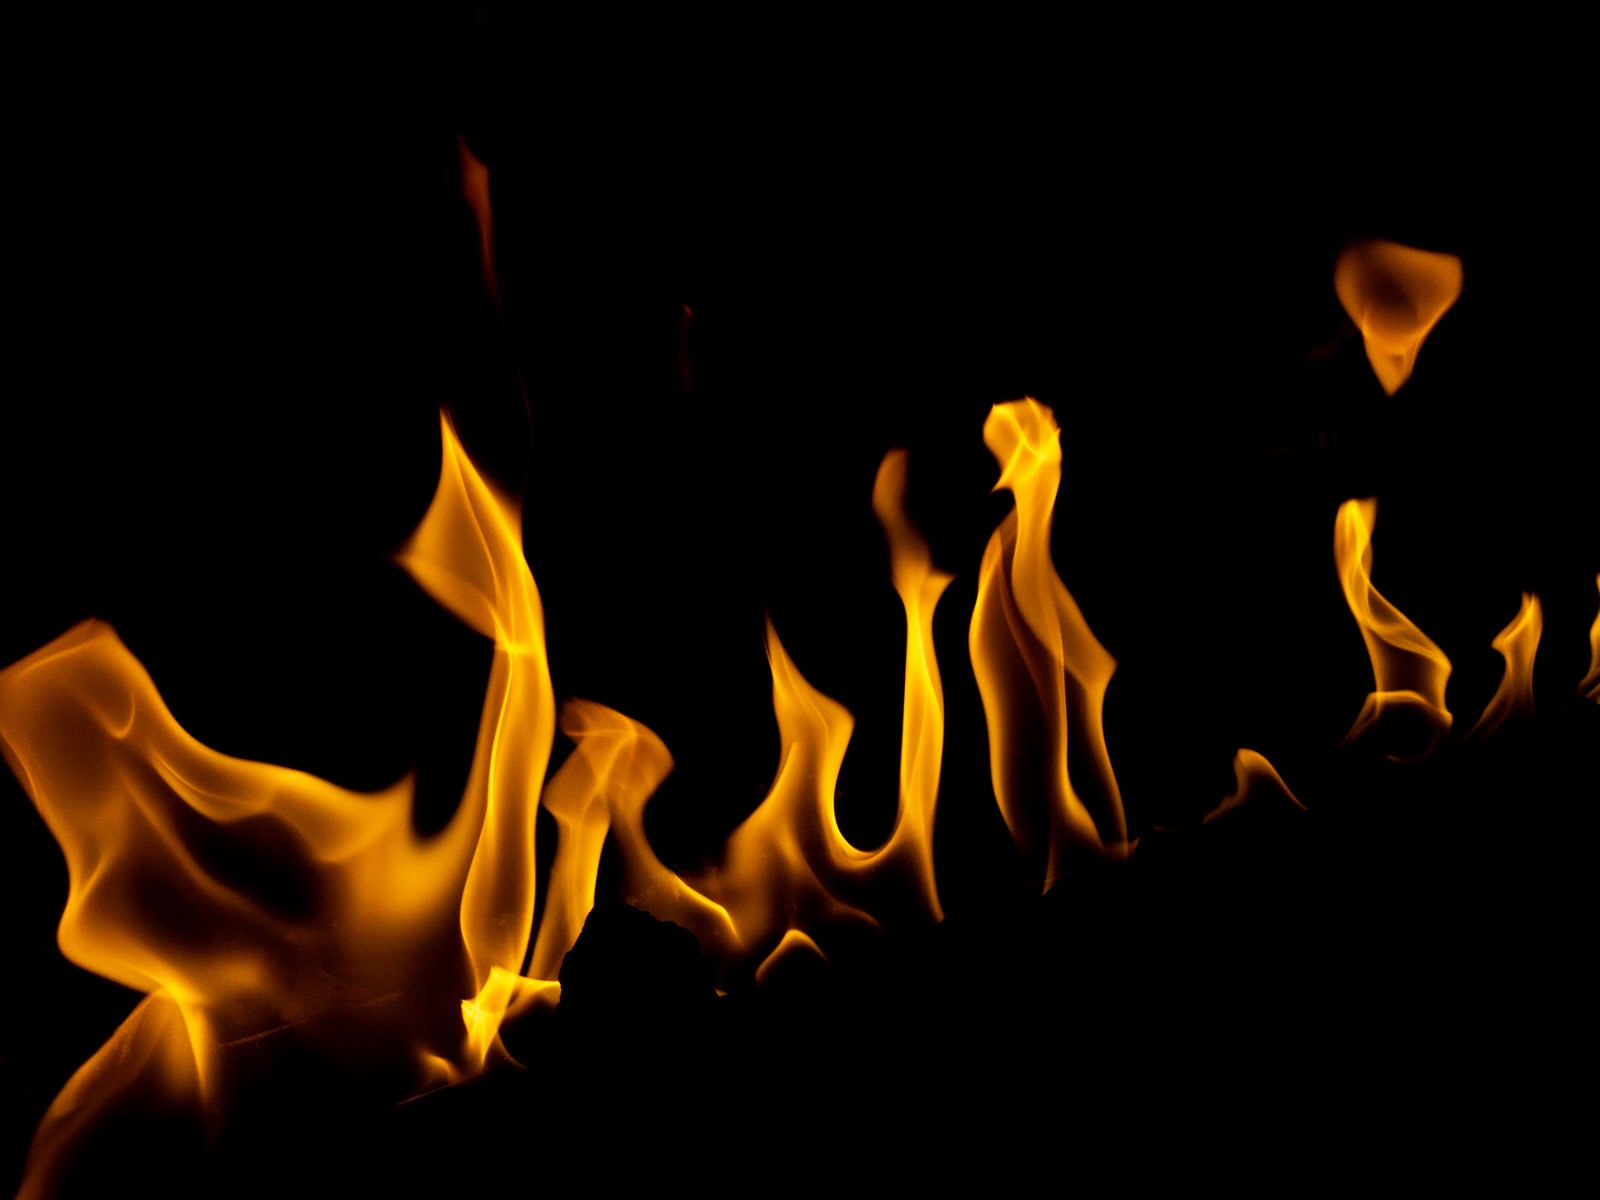 「揺らぐ火」の写真